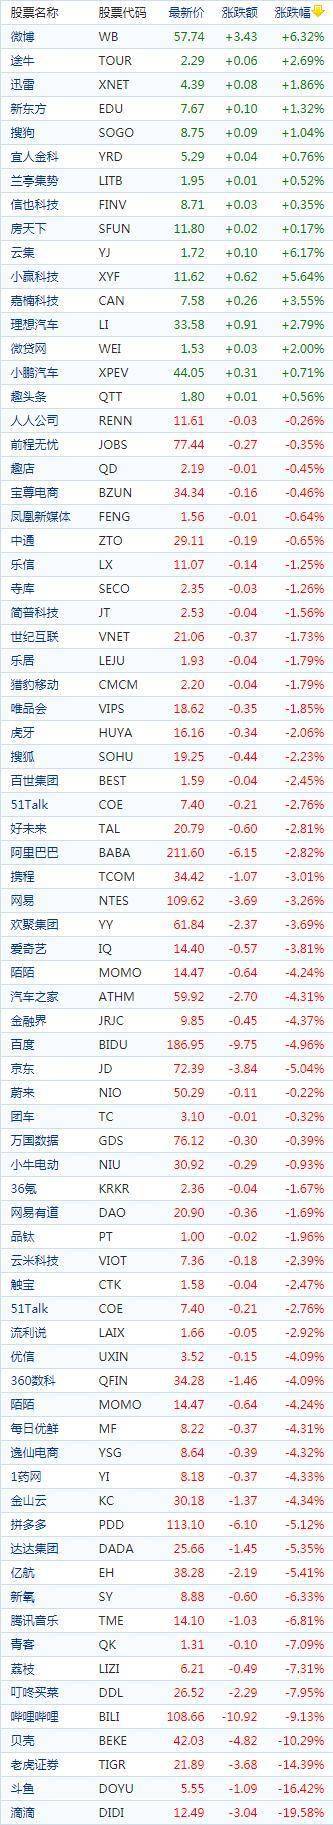 中国概念股周二收盘多数下跌 标普七连涨行情被终结